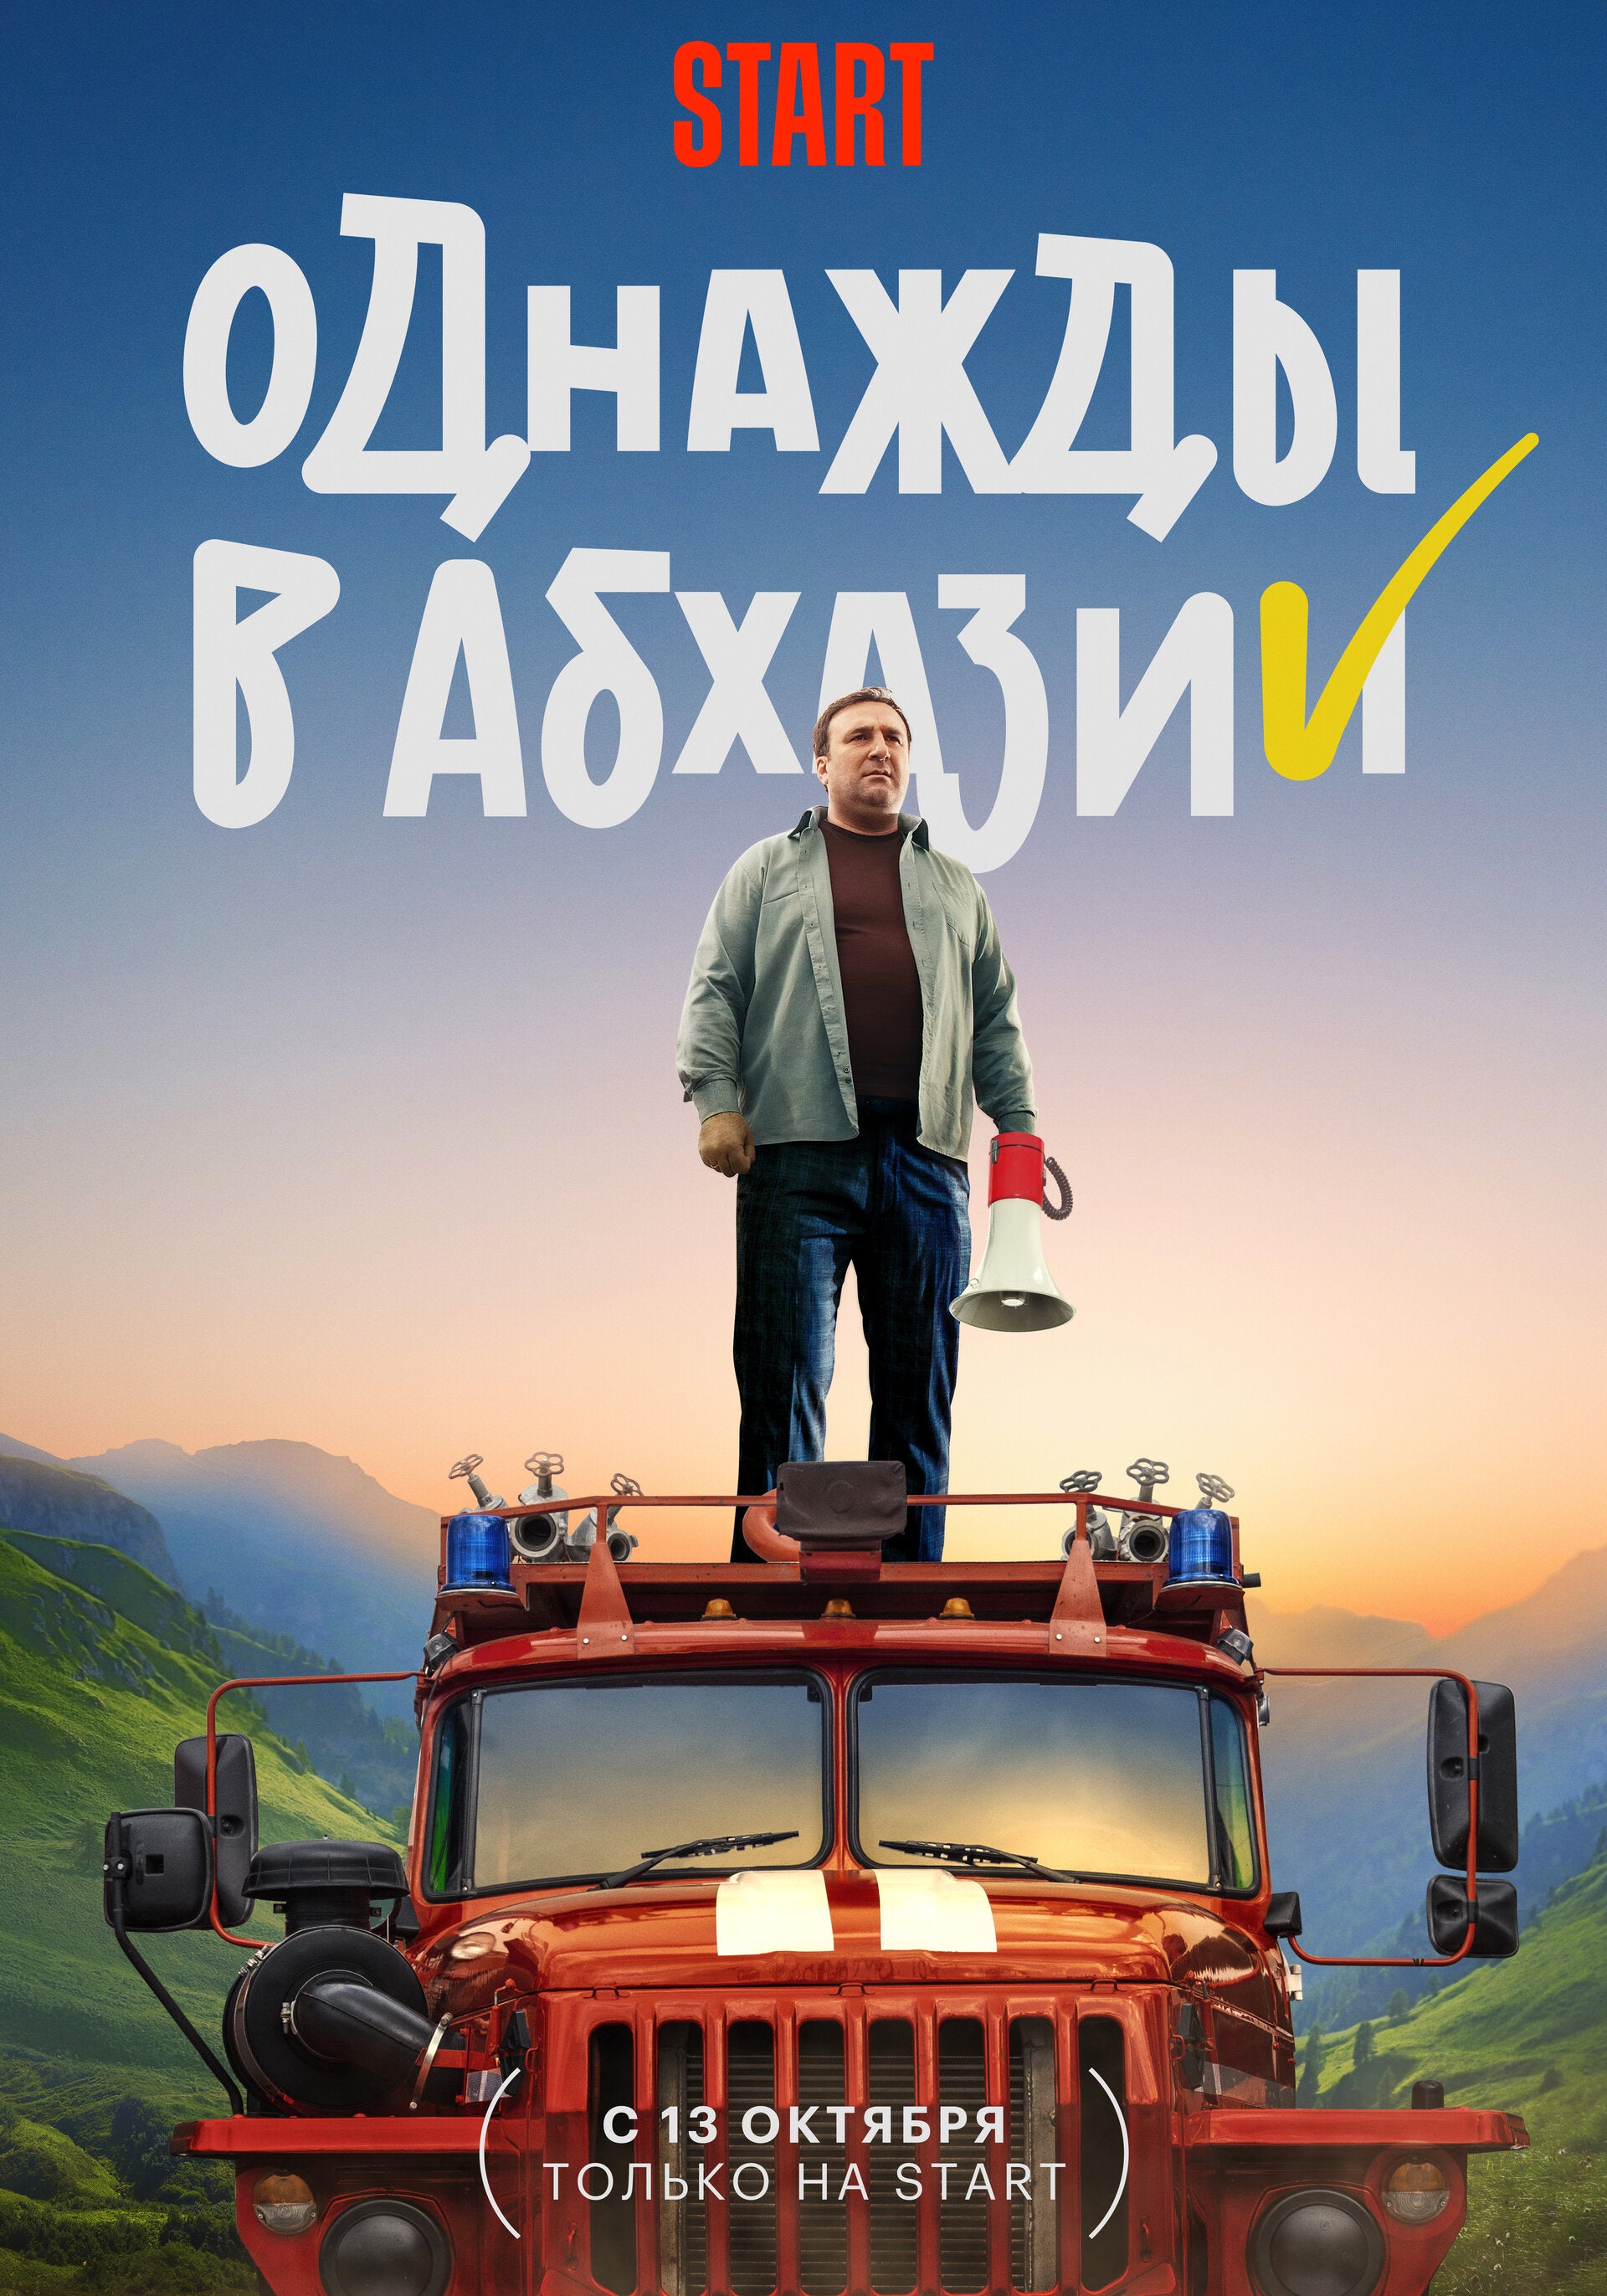 TV ratings for Odnazhdy V Abkhazii (Однажды В Абхазии) in the United Kingdom. START TV series